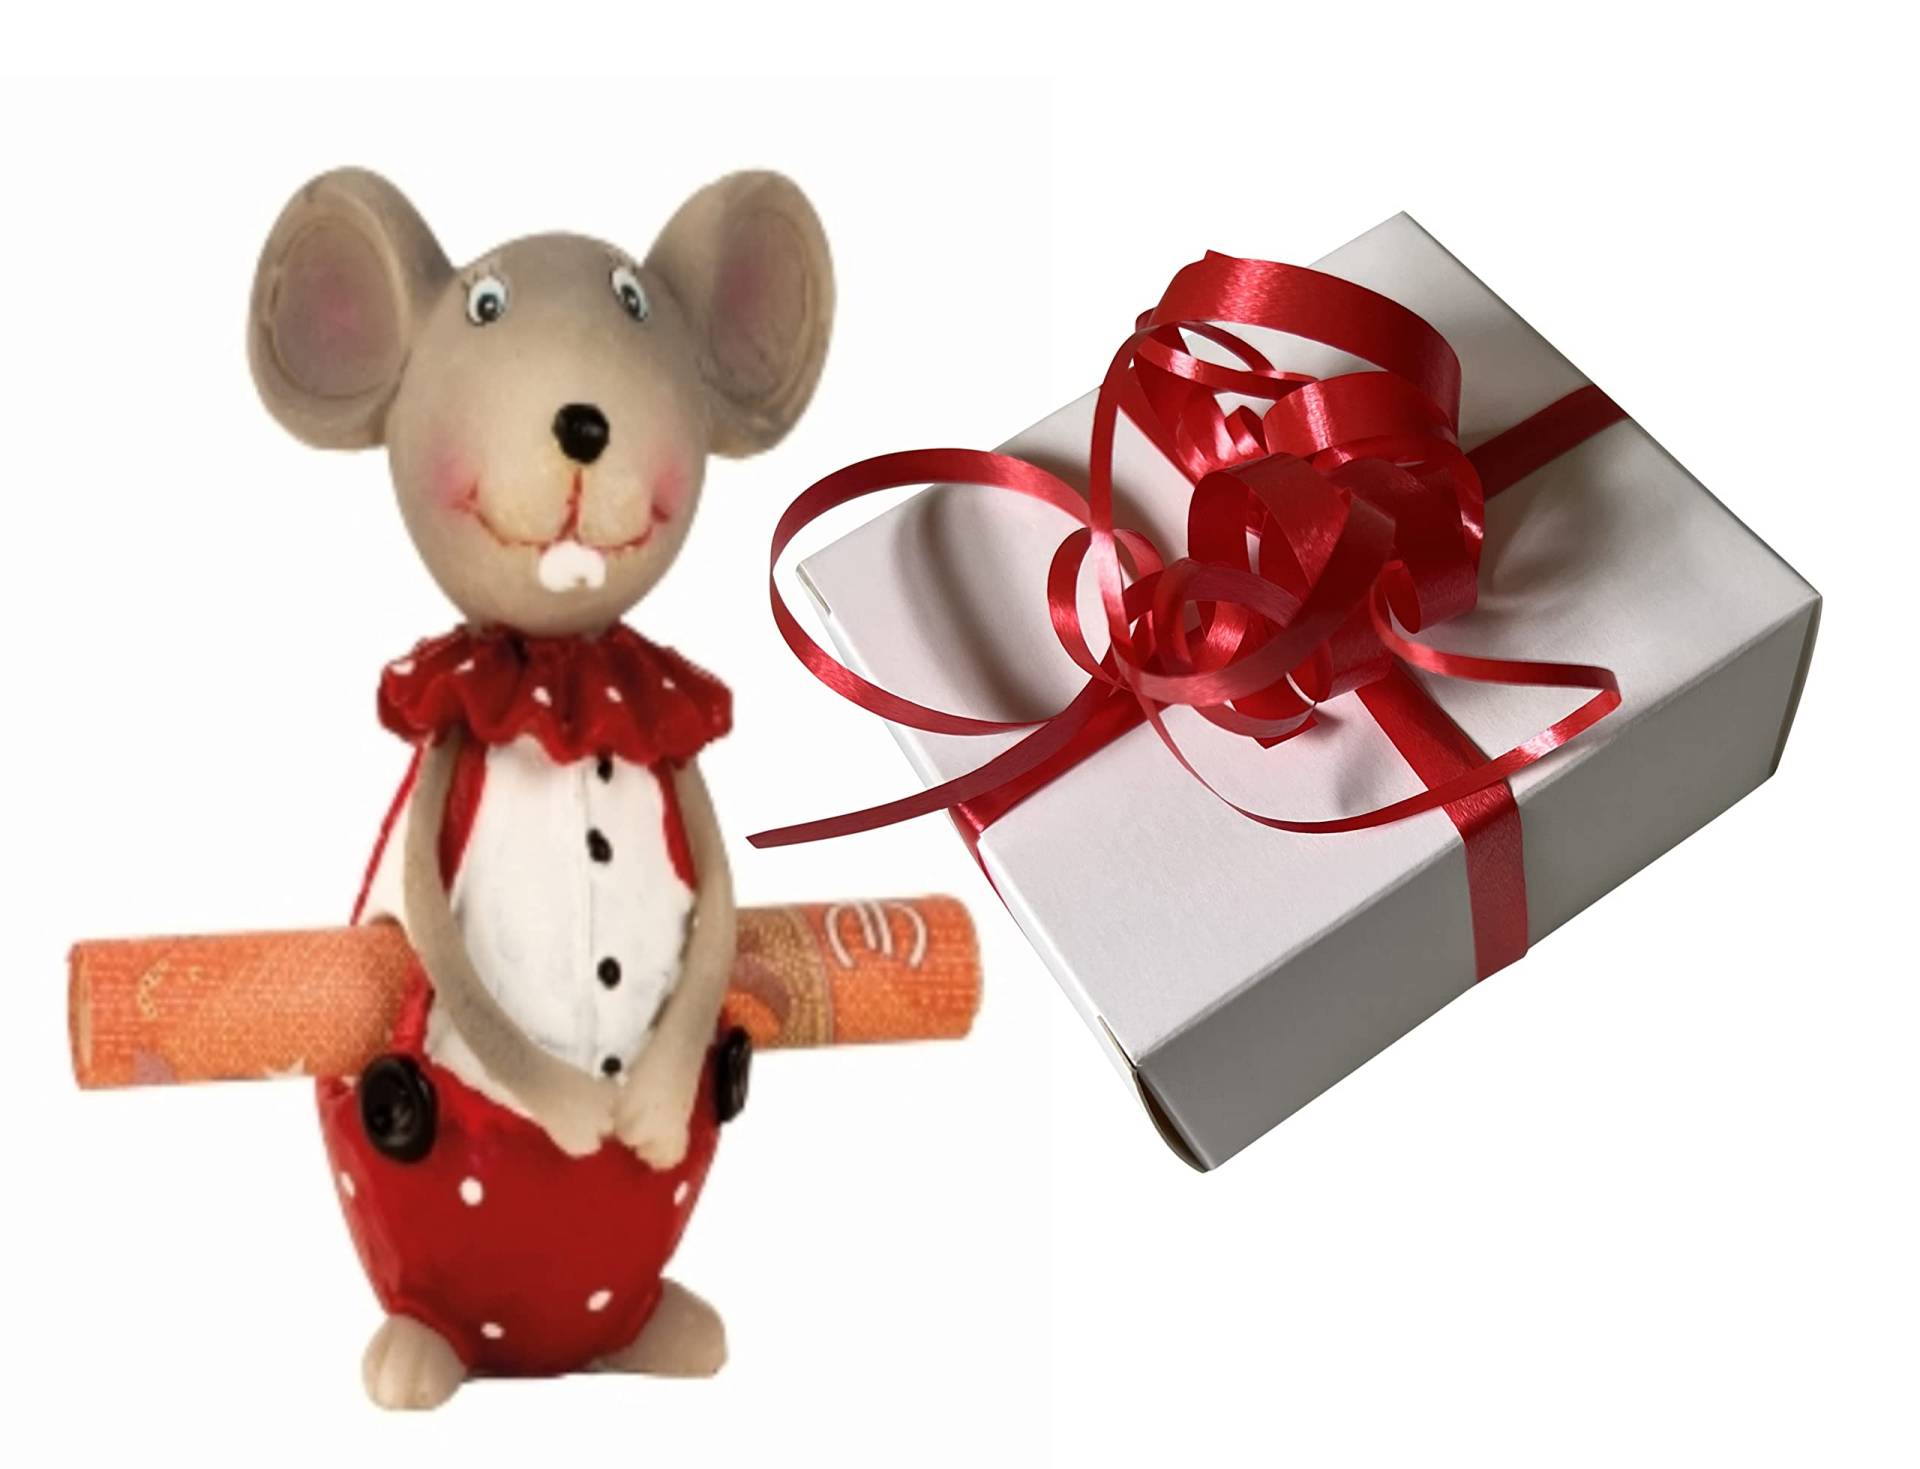 hegehof Geldgeschenk Geldhalter Maus, mit Geschenkschachtel und Geschenkband, 3 teiliges Set, Geldrollenhalter, Geschenkidee für jeden Anlass von Generisch